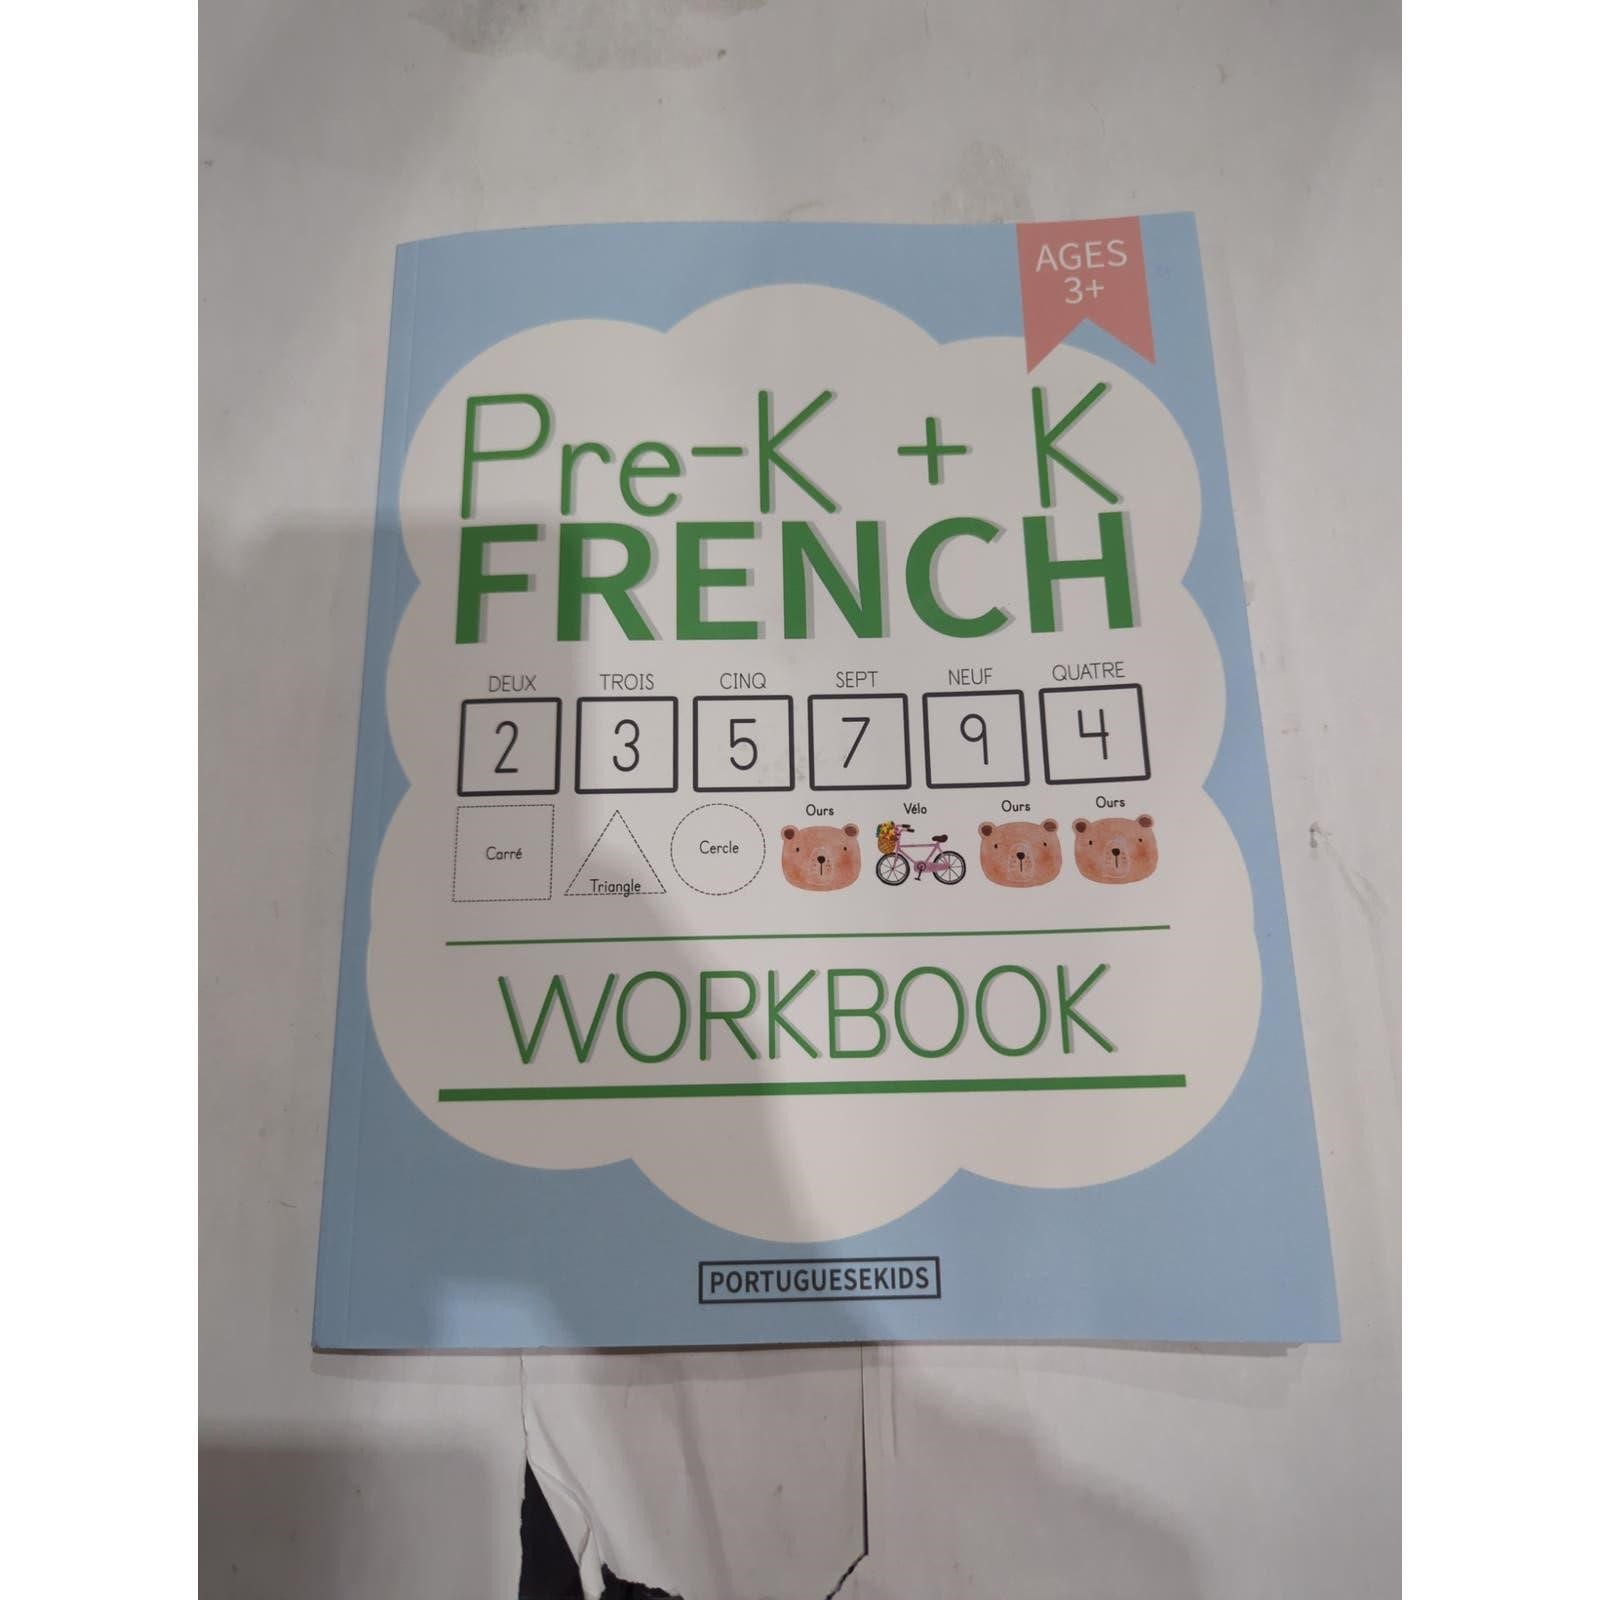 Pre- K + K French workbook